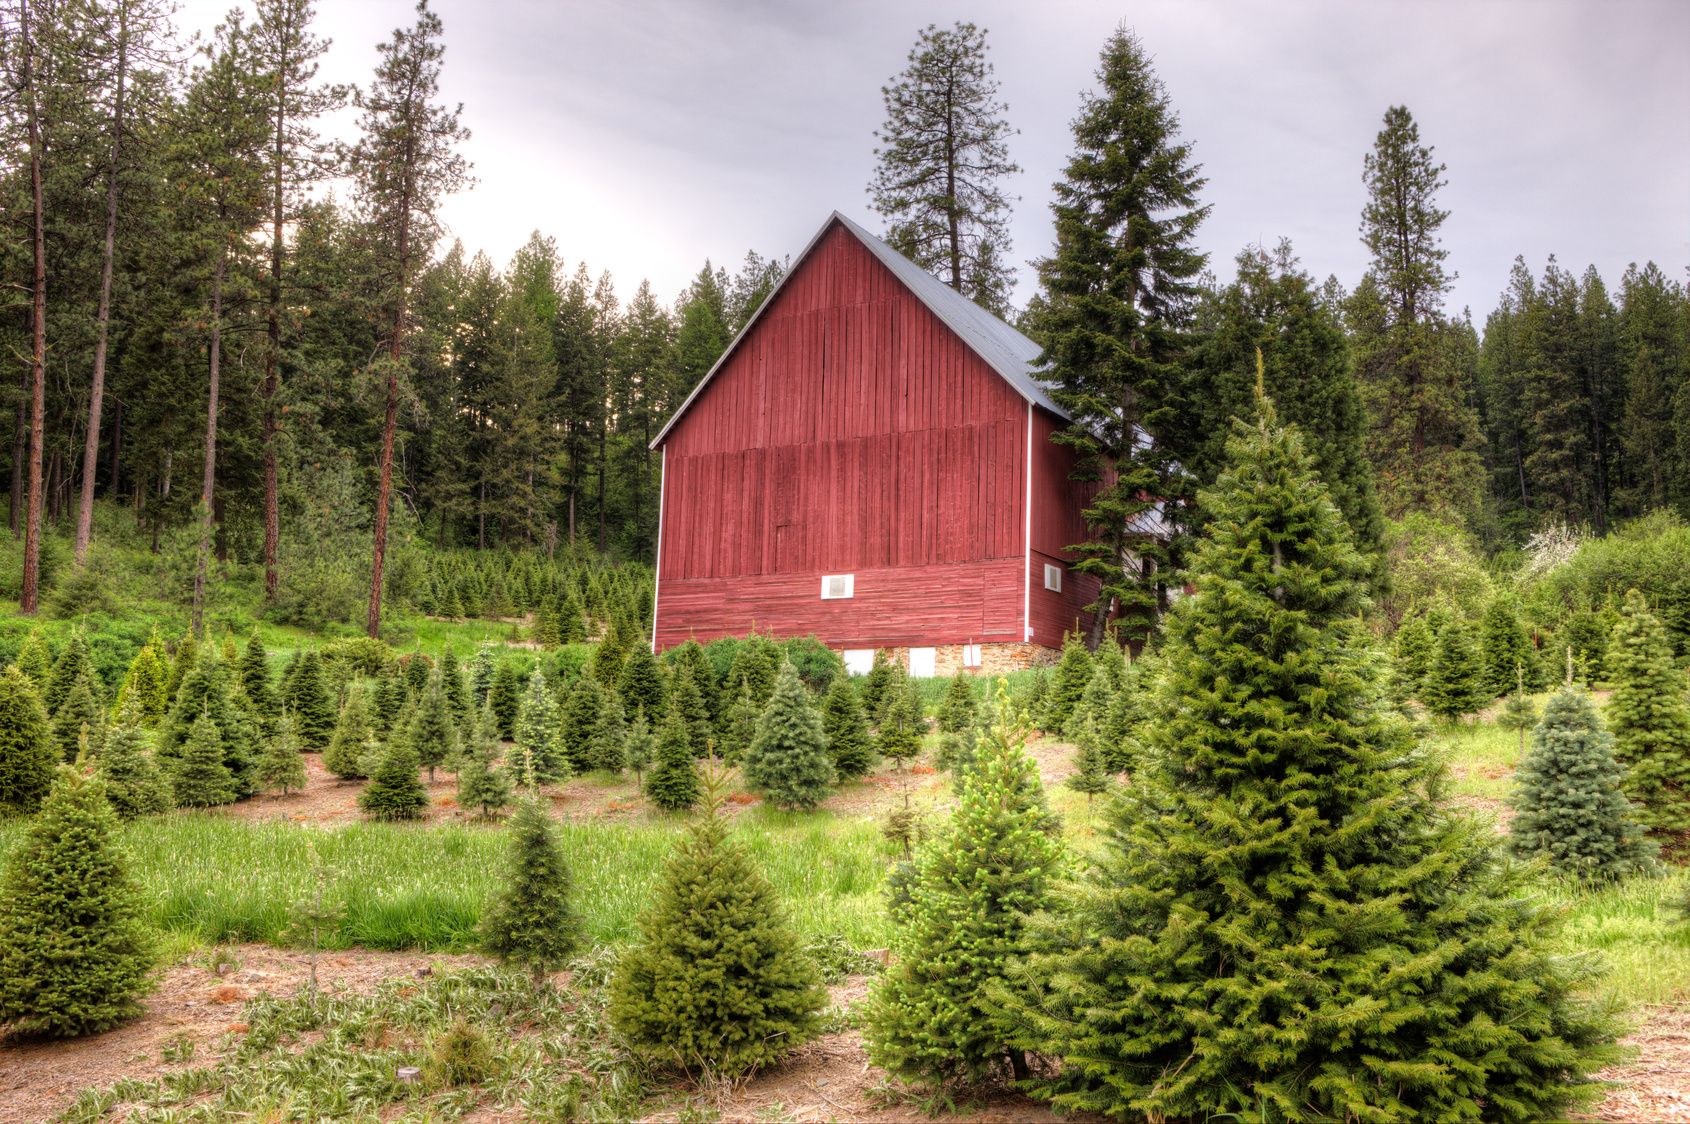 Plan a Christmas Tree Farm